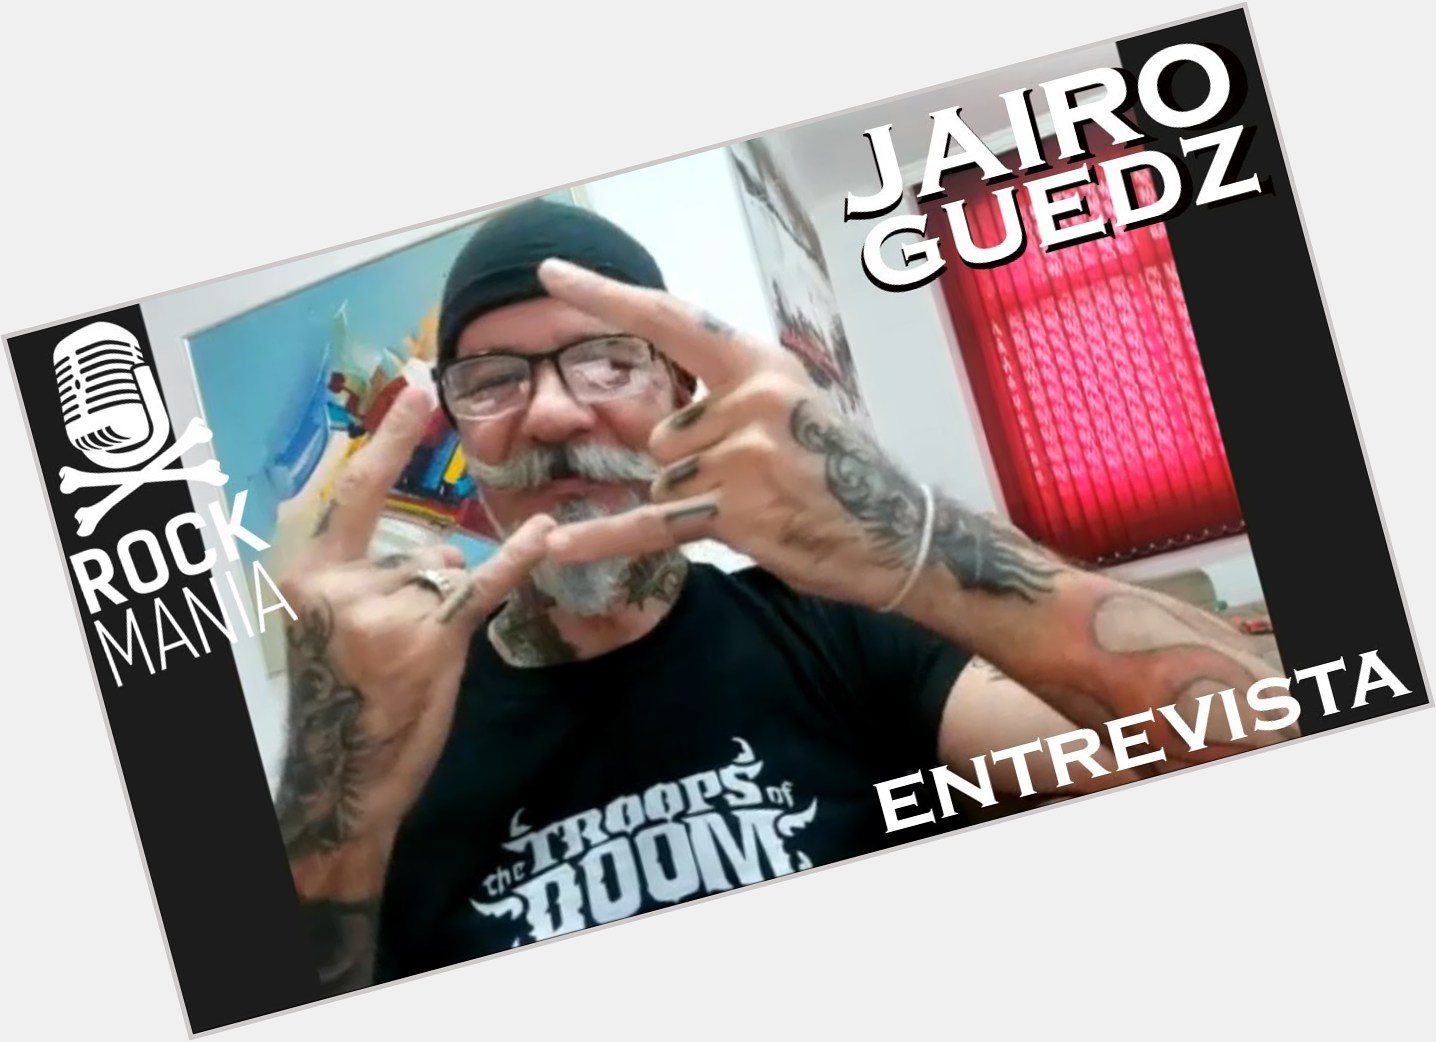 Entrevista com Jairo Guedz